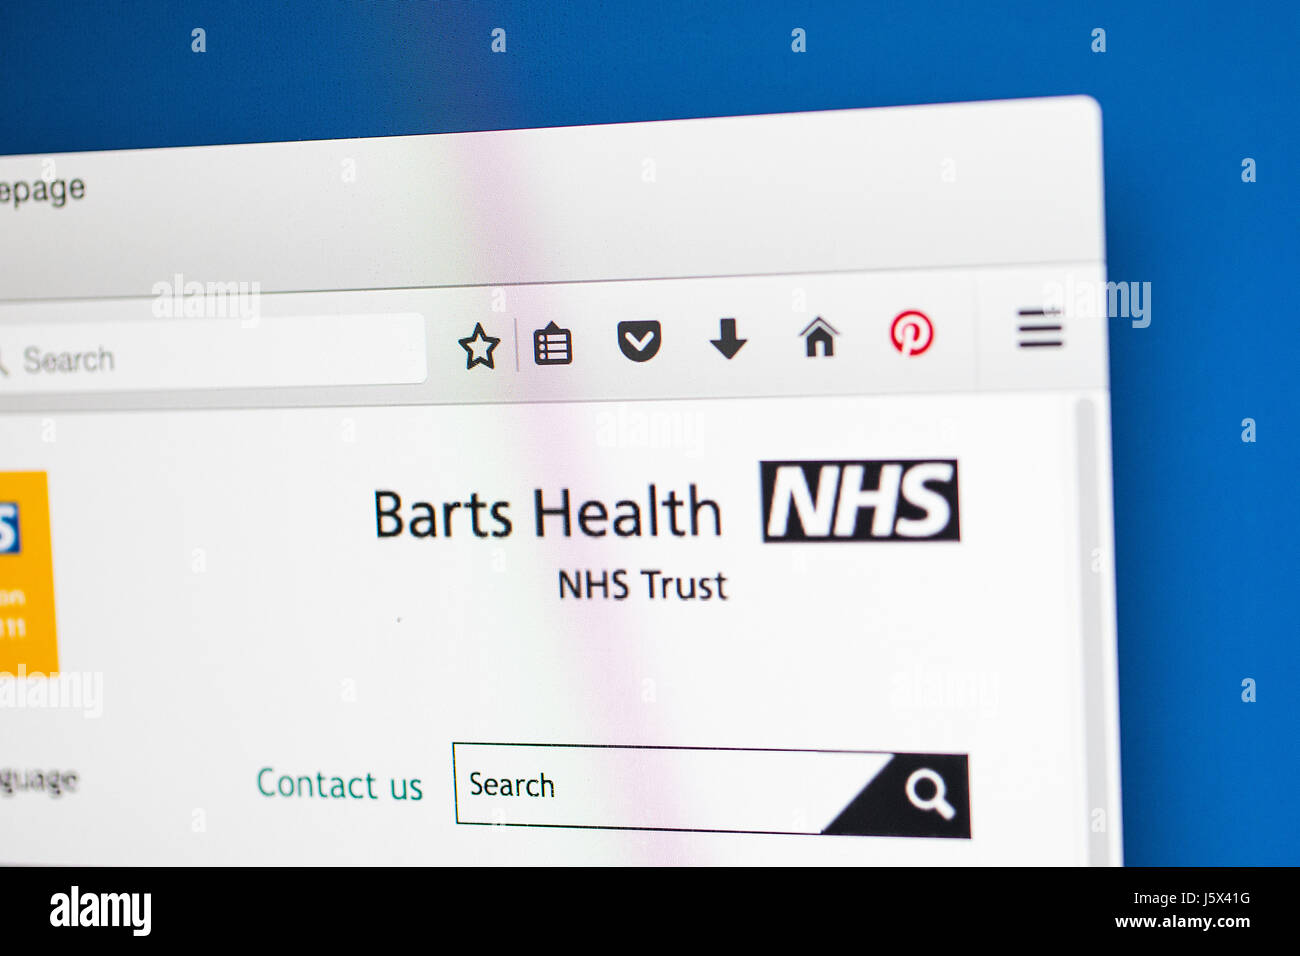 Londres, Royaume-Uni - 17 MAI 2017 : La page d'accueil du site web officiel de la santé Barts NHS Trust, le 17 mai 2017. Banque D'Images